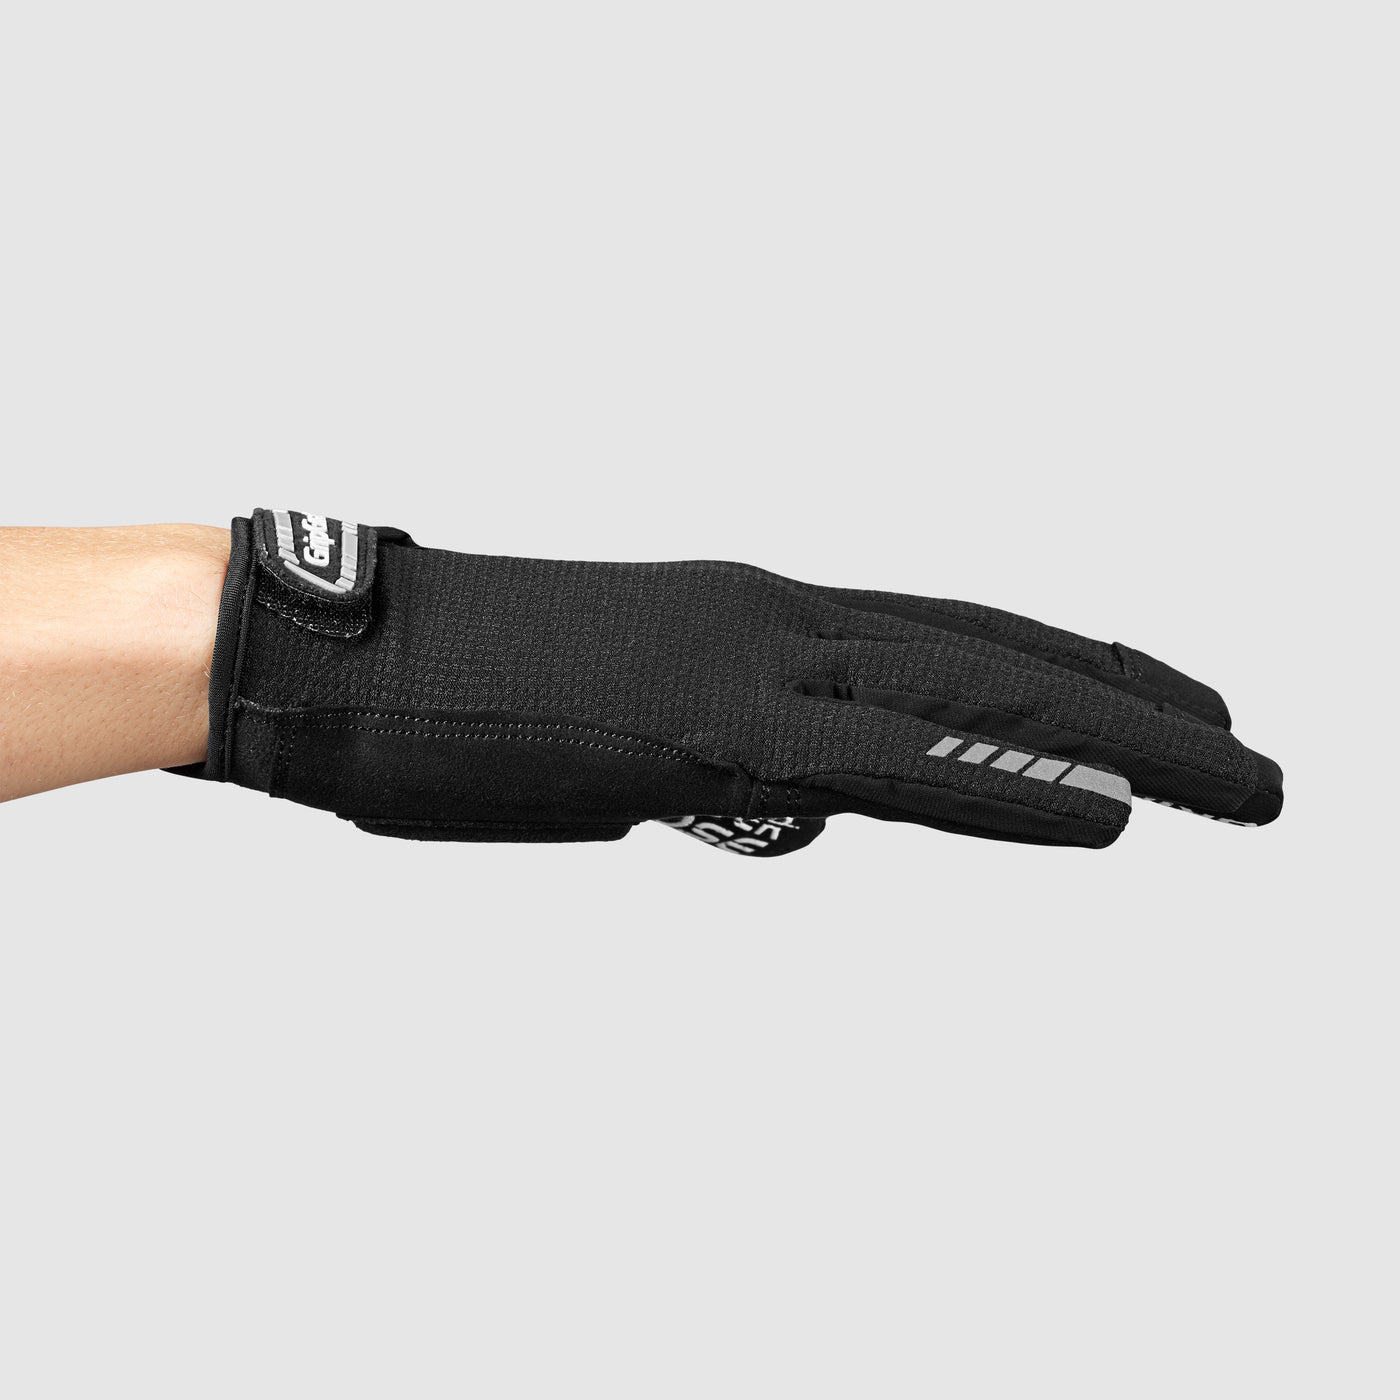 SuperGel XC Padded Full Finger Summer Gloves